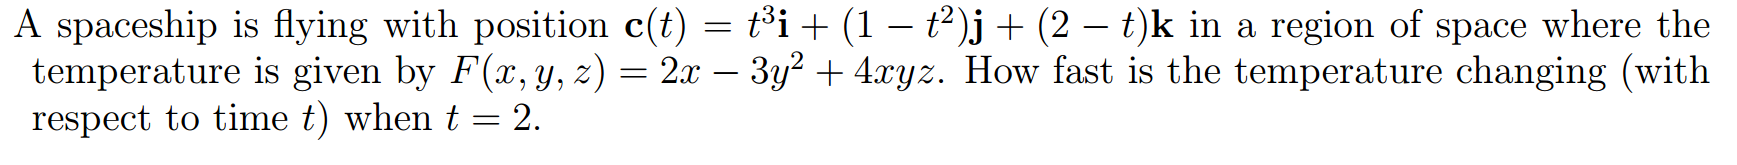 3 frac x 5 x. Sqrt(cos(x))cos(200 x)+sqrt(ABS(X))-.07)(4-X*X)^0.01, sqrt(9-x^2),-sqrt(9-x^2) from -4.5 to 4.5. \Sqrt((4-\sqrt(7)))+4\sqrt(2). Sqrt2+sqrt2. (Sqrt(cos(x))*cos(75x)+sqrt(ABS(X))-.7)*(4-X*X)1.2,sqrt(9-x^2)-sqrt(9-x^2) from-4.5-x.